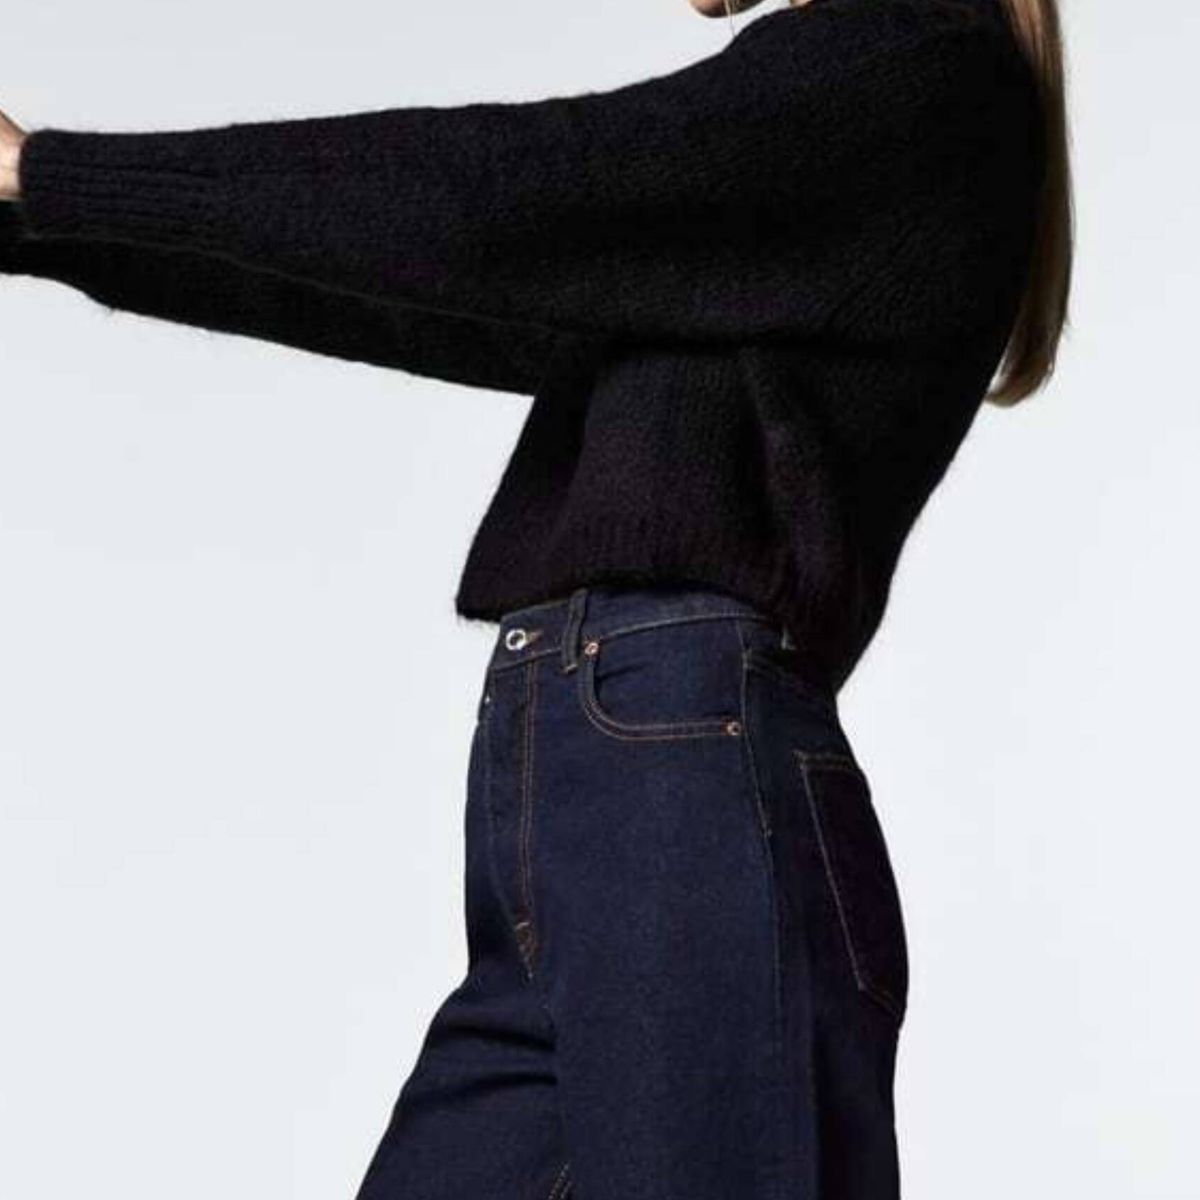 Jeans en tendencia para 2022: todos los cortes que estilizan tus piernas